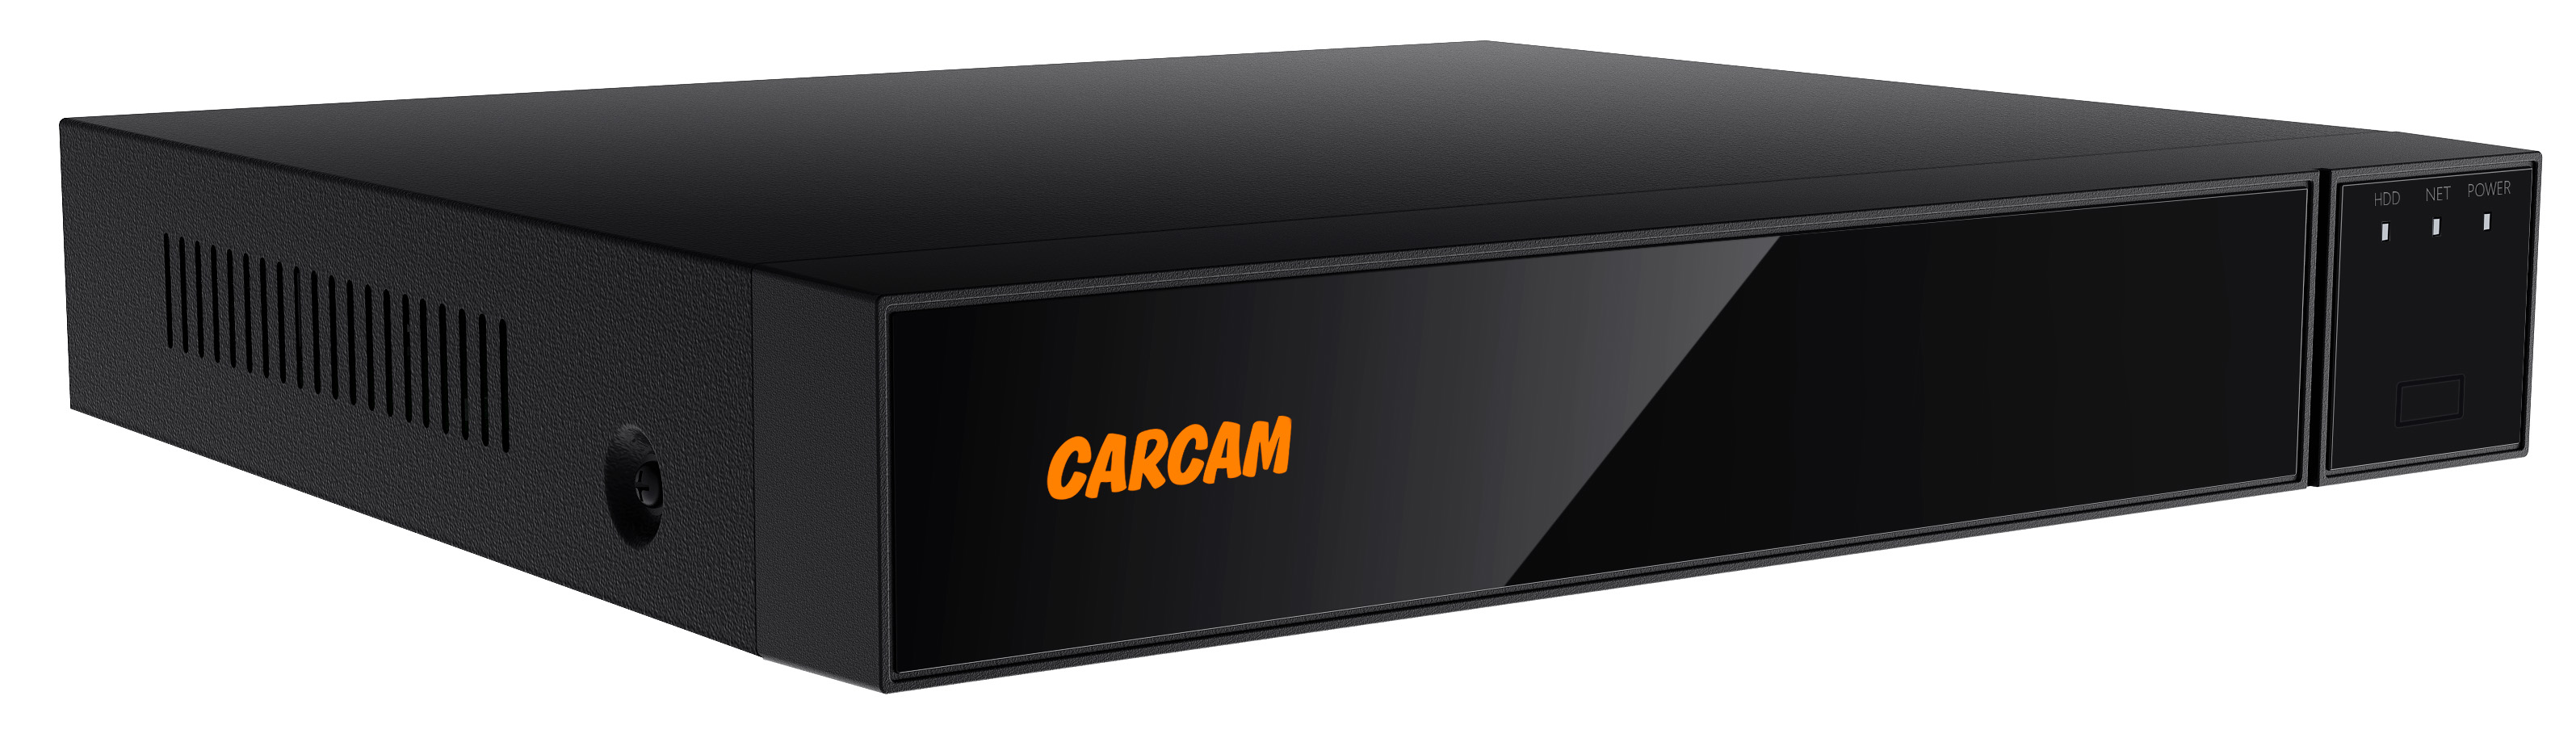 16-канальный гибридный видеорегистратор CARCAM 16CH XVR 8716 гибридный видеорегистратор carcam 4ch xvr3304 для ahd и ip камер видеонаблюдения